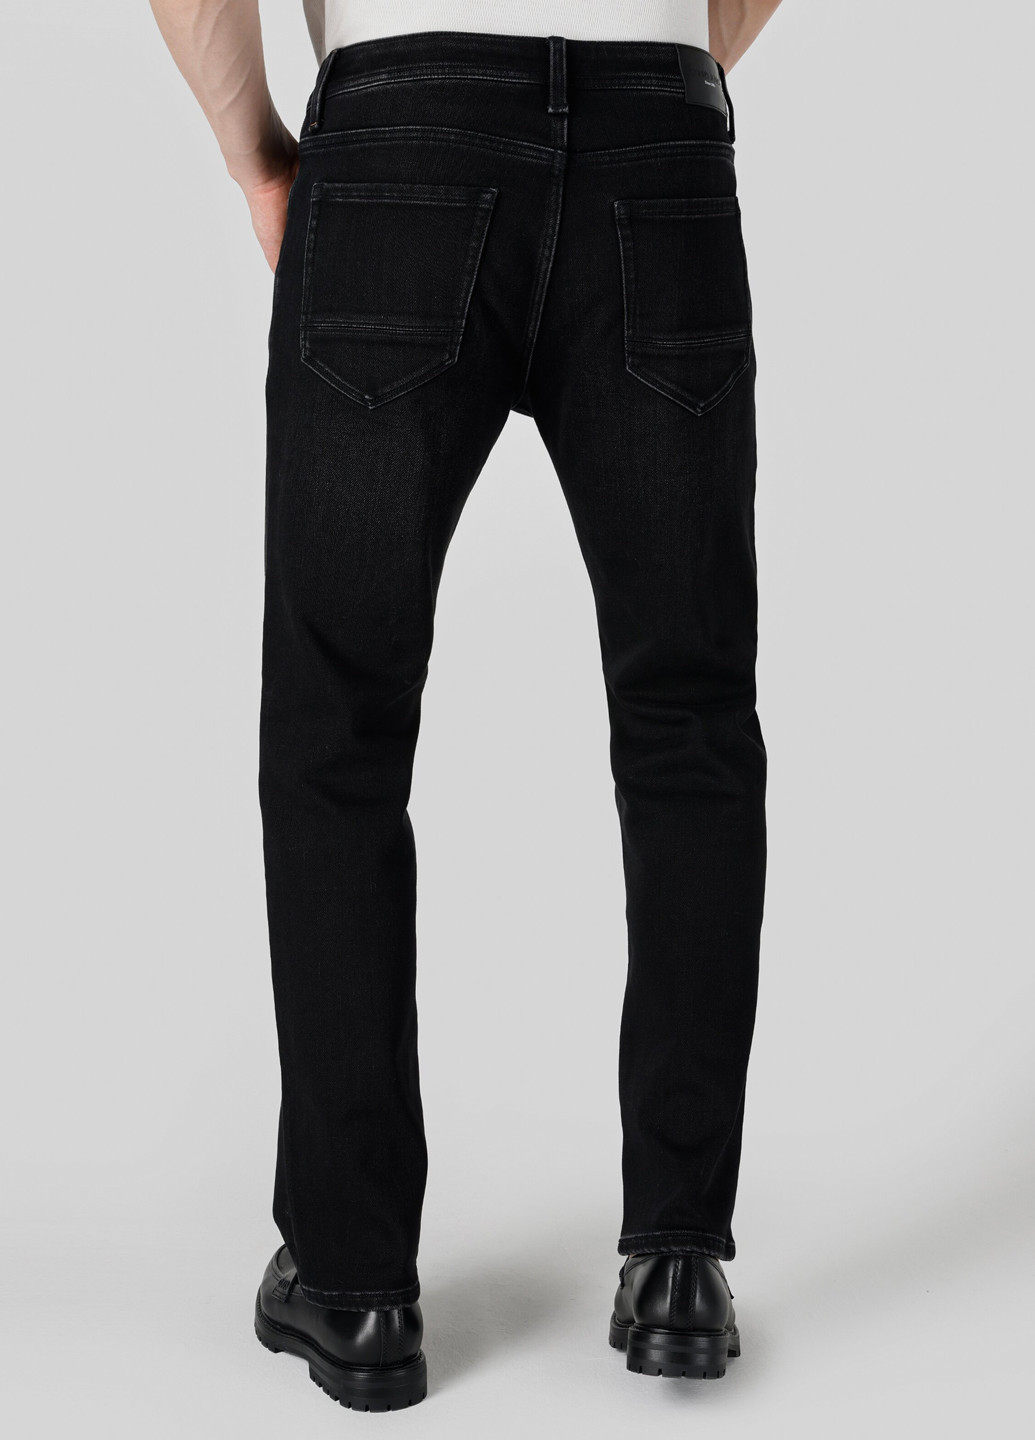 Черные демисезонные регюлар фит джинсы Colin's